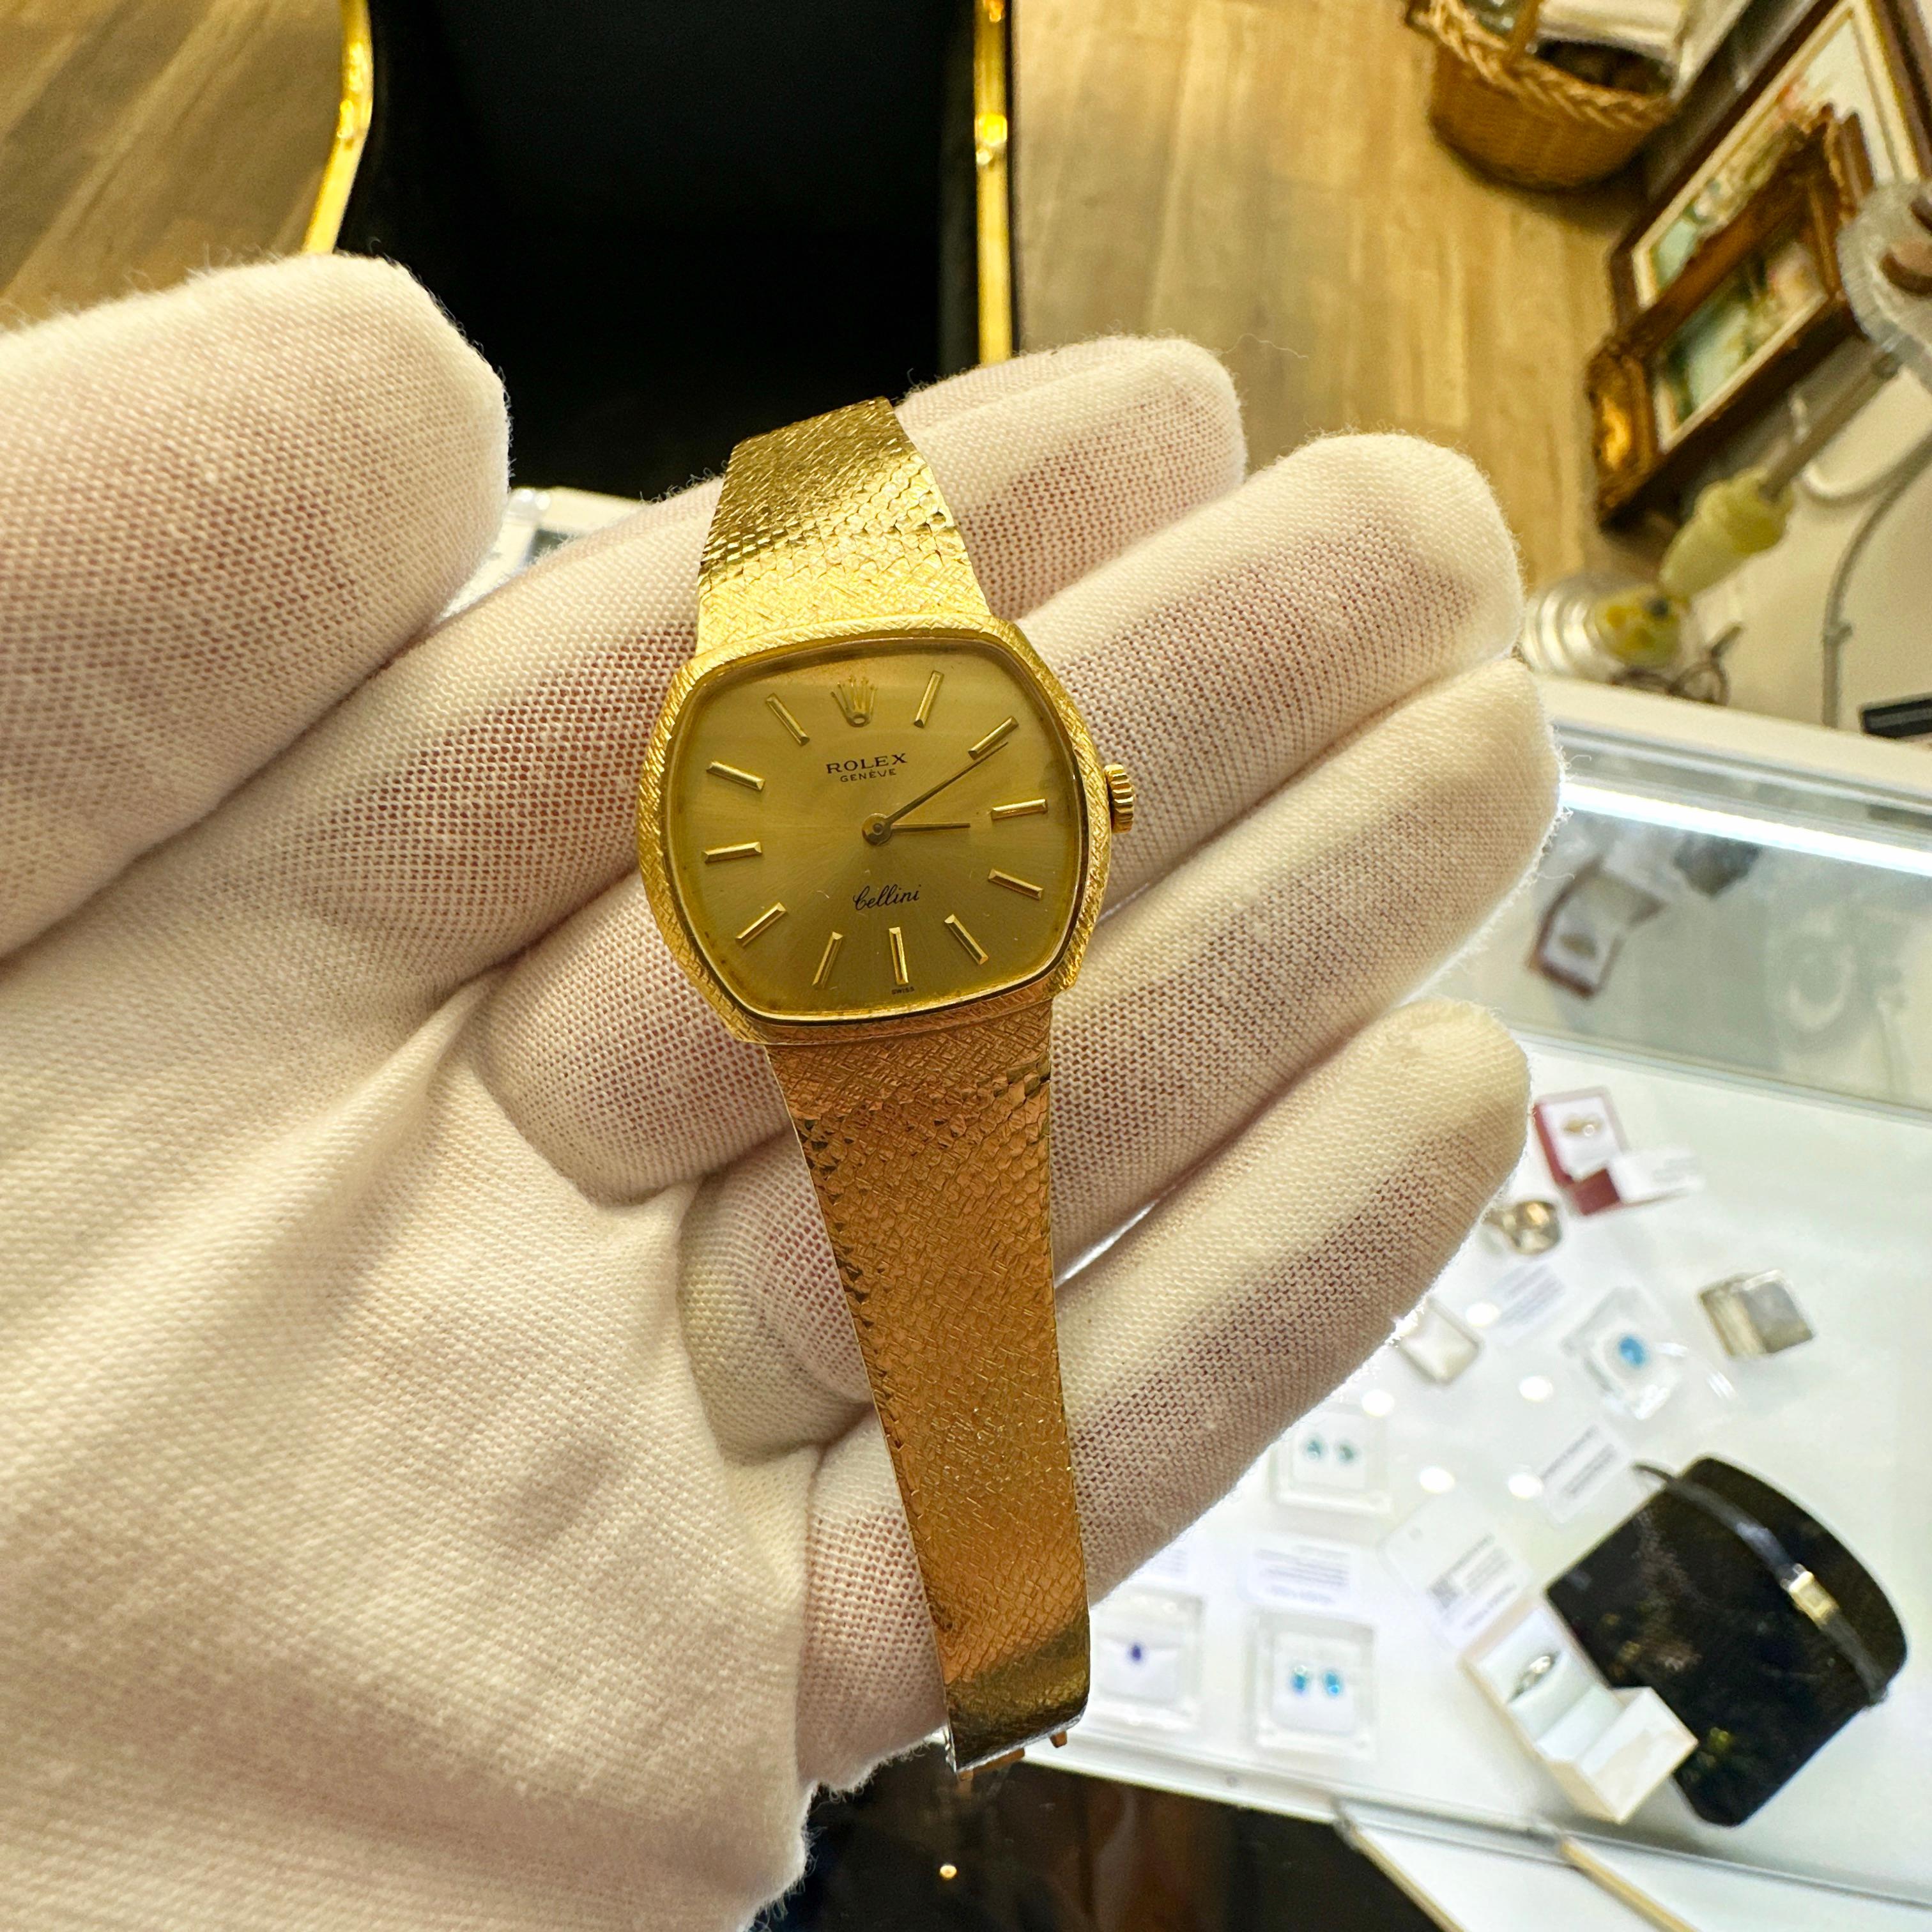 Hier ist eine schöne 18k Gelbgold Damen ROLEX Cellini Armbanduhr. Diese schöne Uhr zeichnet sich durch ihr elegantes und klassisches Design aus und richtet sich an Menschen, die raffinierte Ästhetik und traditionelle Handwerkskunst schätzen.